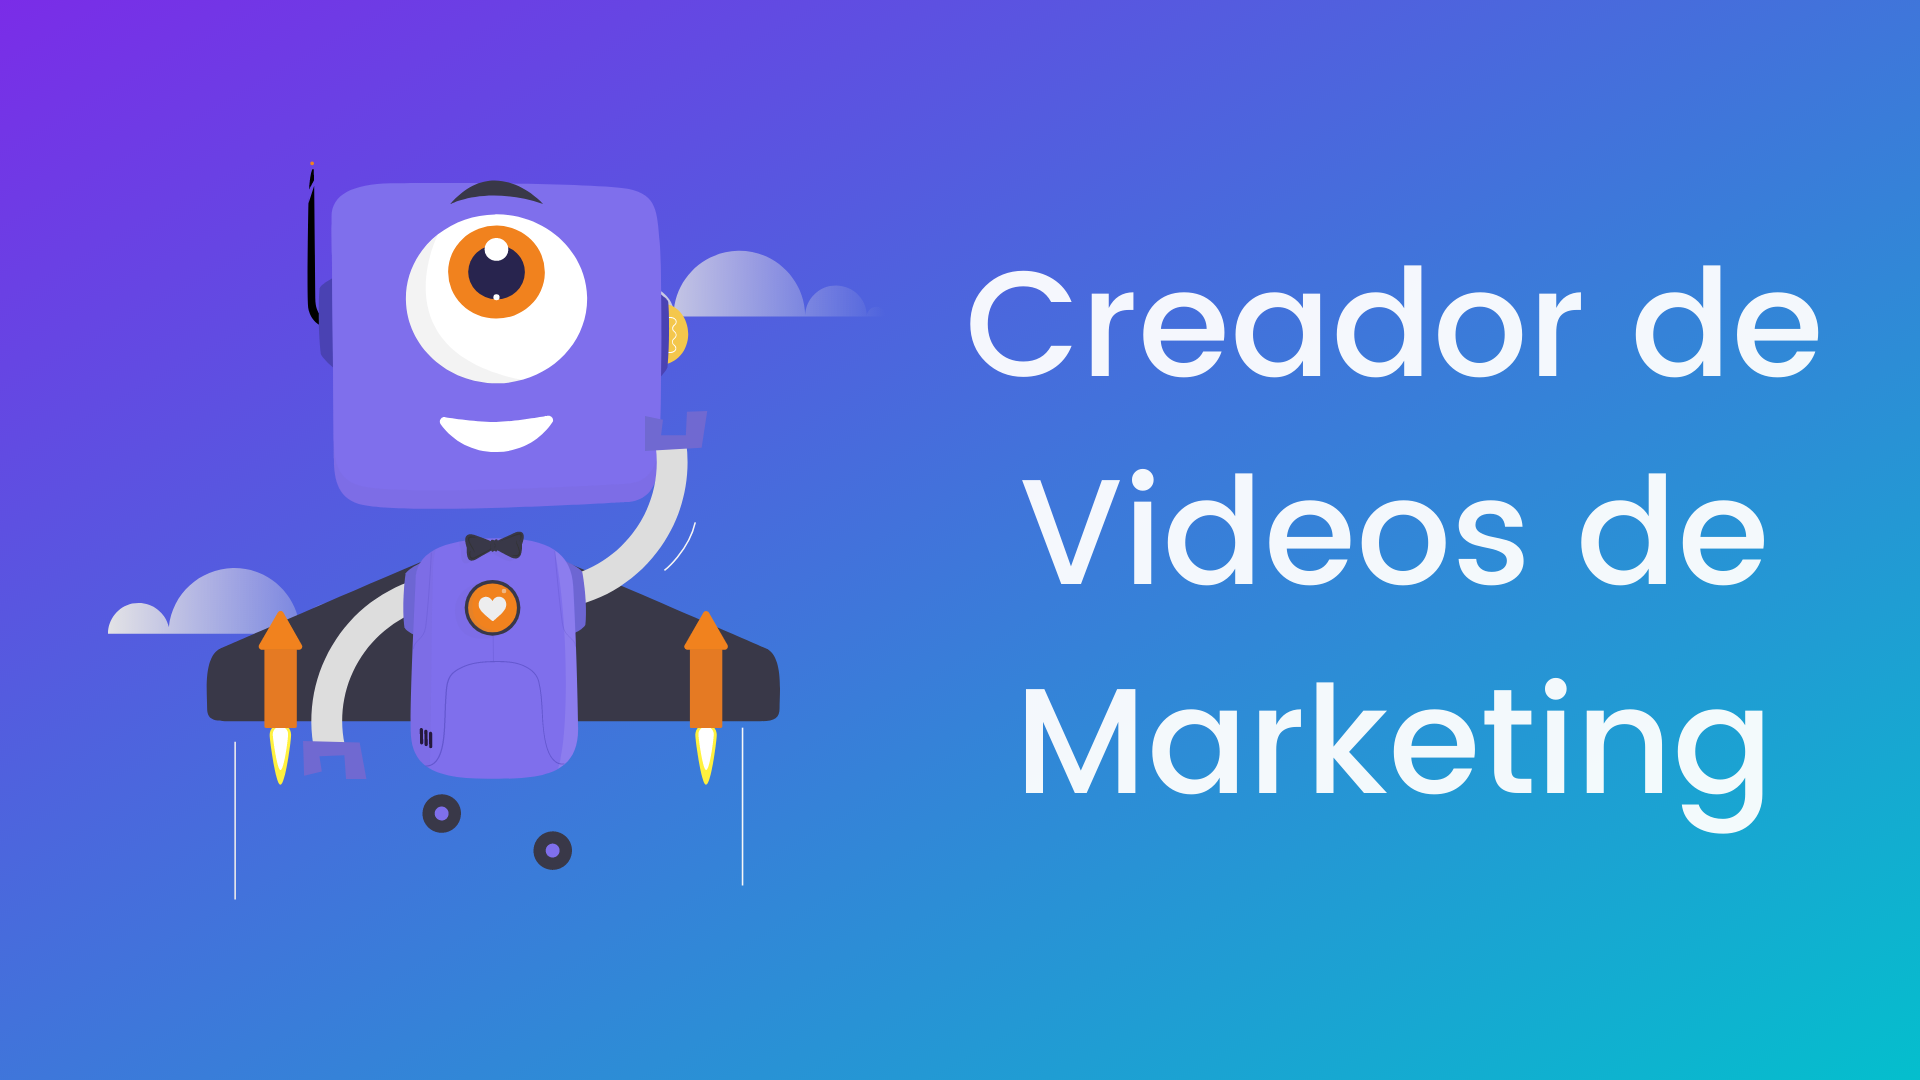 marketing-video-ogimage_es